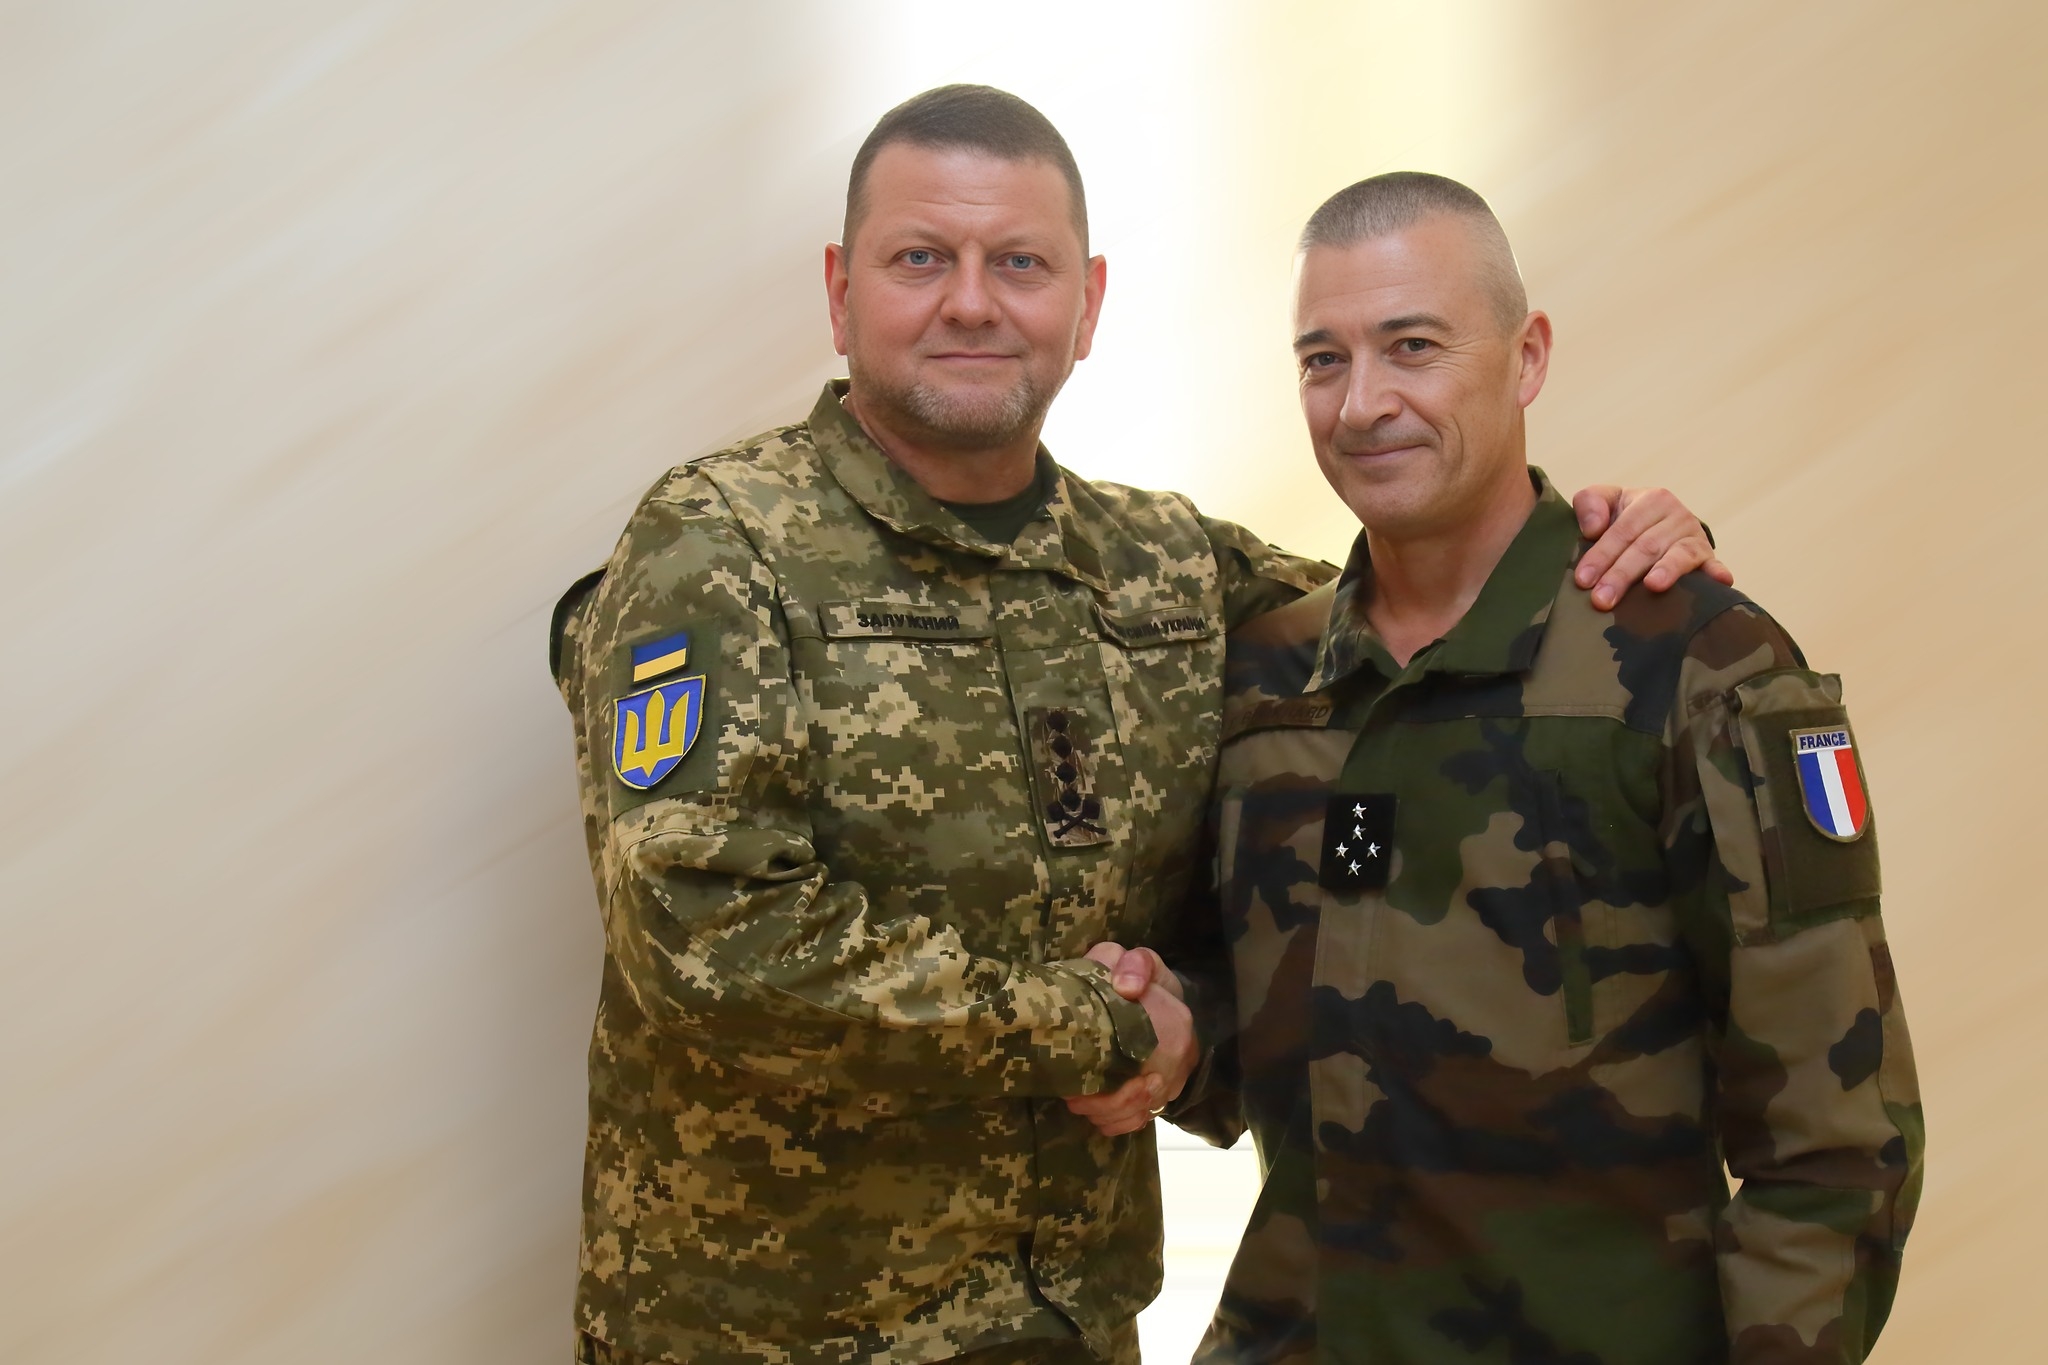 4월 29일(형지시간) 유럽 내 미군을 지휘하는 크리스토퍼 카볼리(오른쪽) 북대서양조약기구(NATO·나토) 유럽연합군 최고사령관과 회담했다며 함께 찍은 사진을 공식 소셜네트워크서비스(SNS)에 올린 발레리 잘루즈니(왼쪽) 우크라이나군 총사령관. 이 사진이 대중에 공개된 잘루즈니 총사령관의 마지막 공개석상 모습이다. 2023.4.30 잘루즈니 페이스북